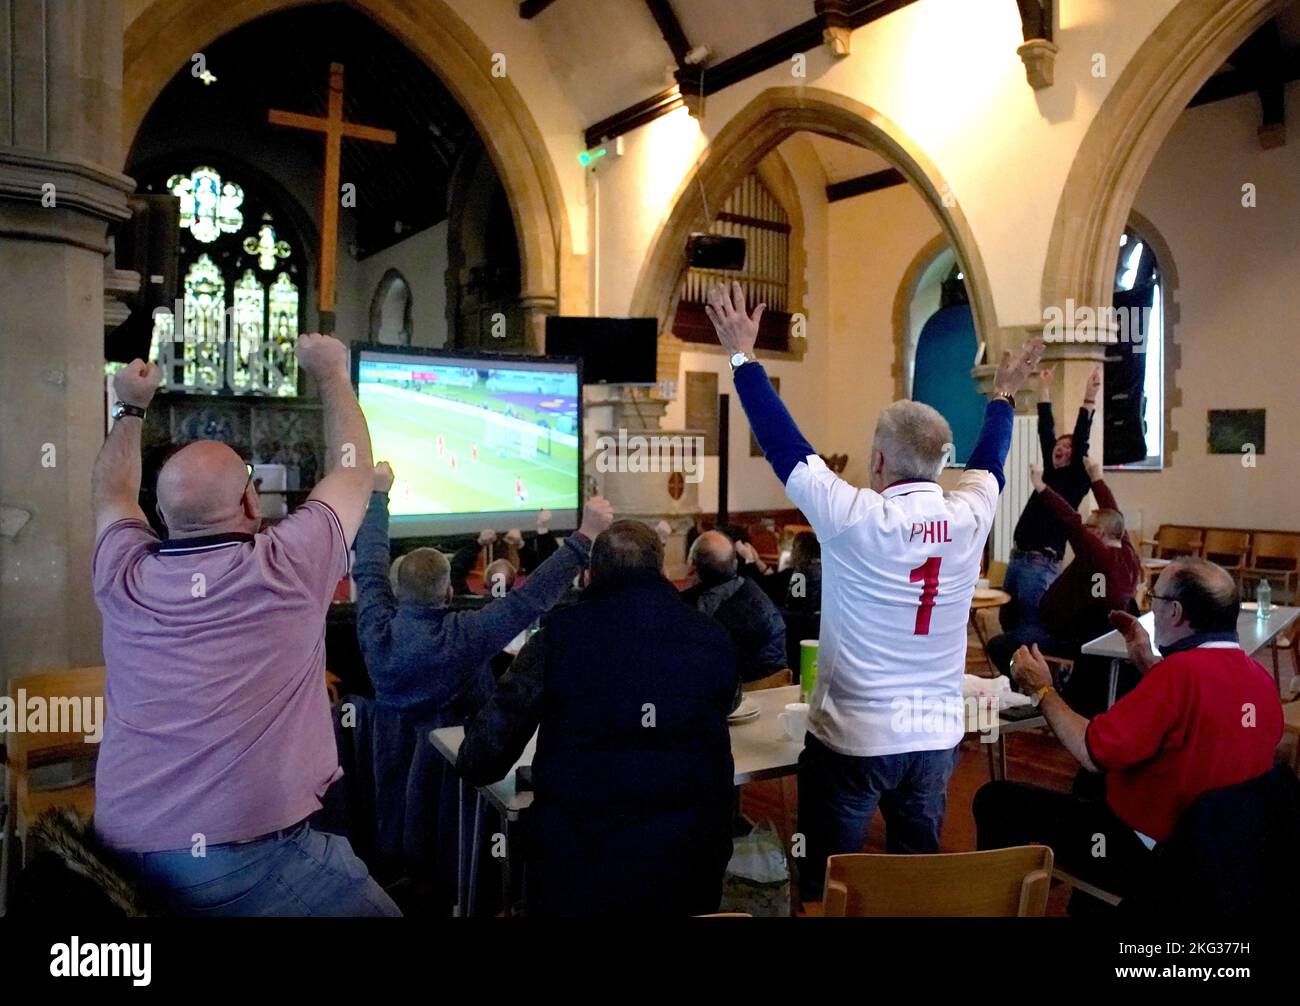 Die Fans feiern Englands drittes Tor, als sie das Spiel England gegen den Iran in der Holy Trinity Church in Sittingbourne, Kent, während der FIFA Weltmeisterschaft 2022 verfolgen. Bilddatum: Montag, 21. November 2022. Stockfoto